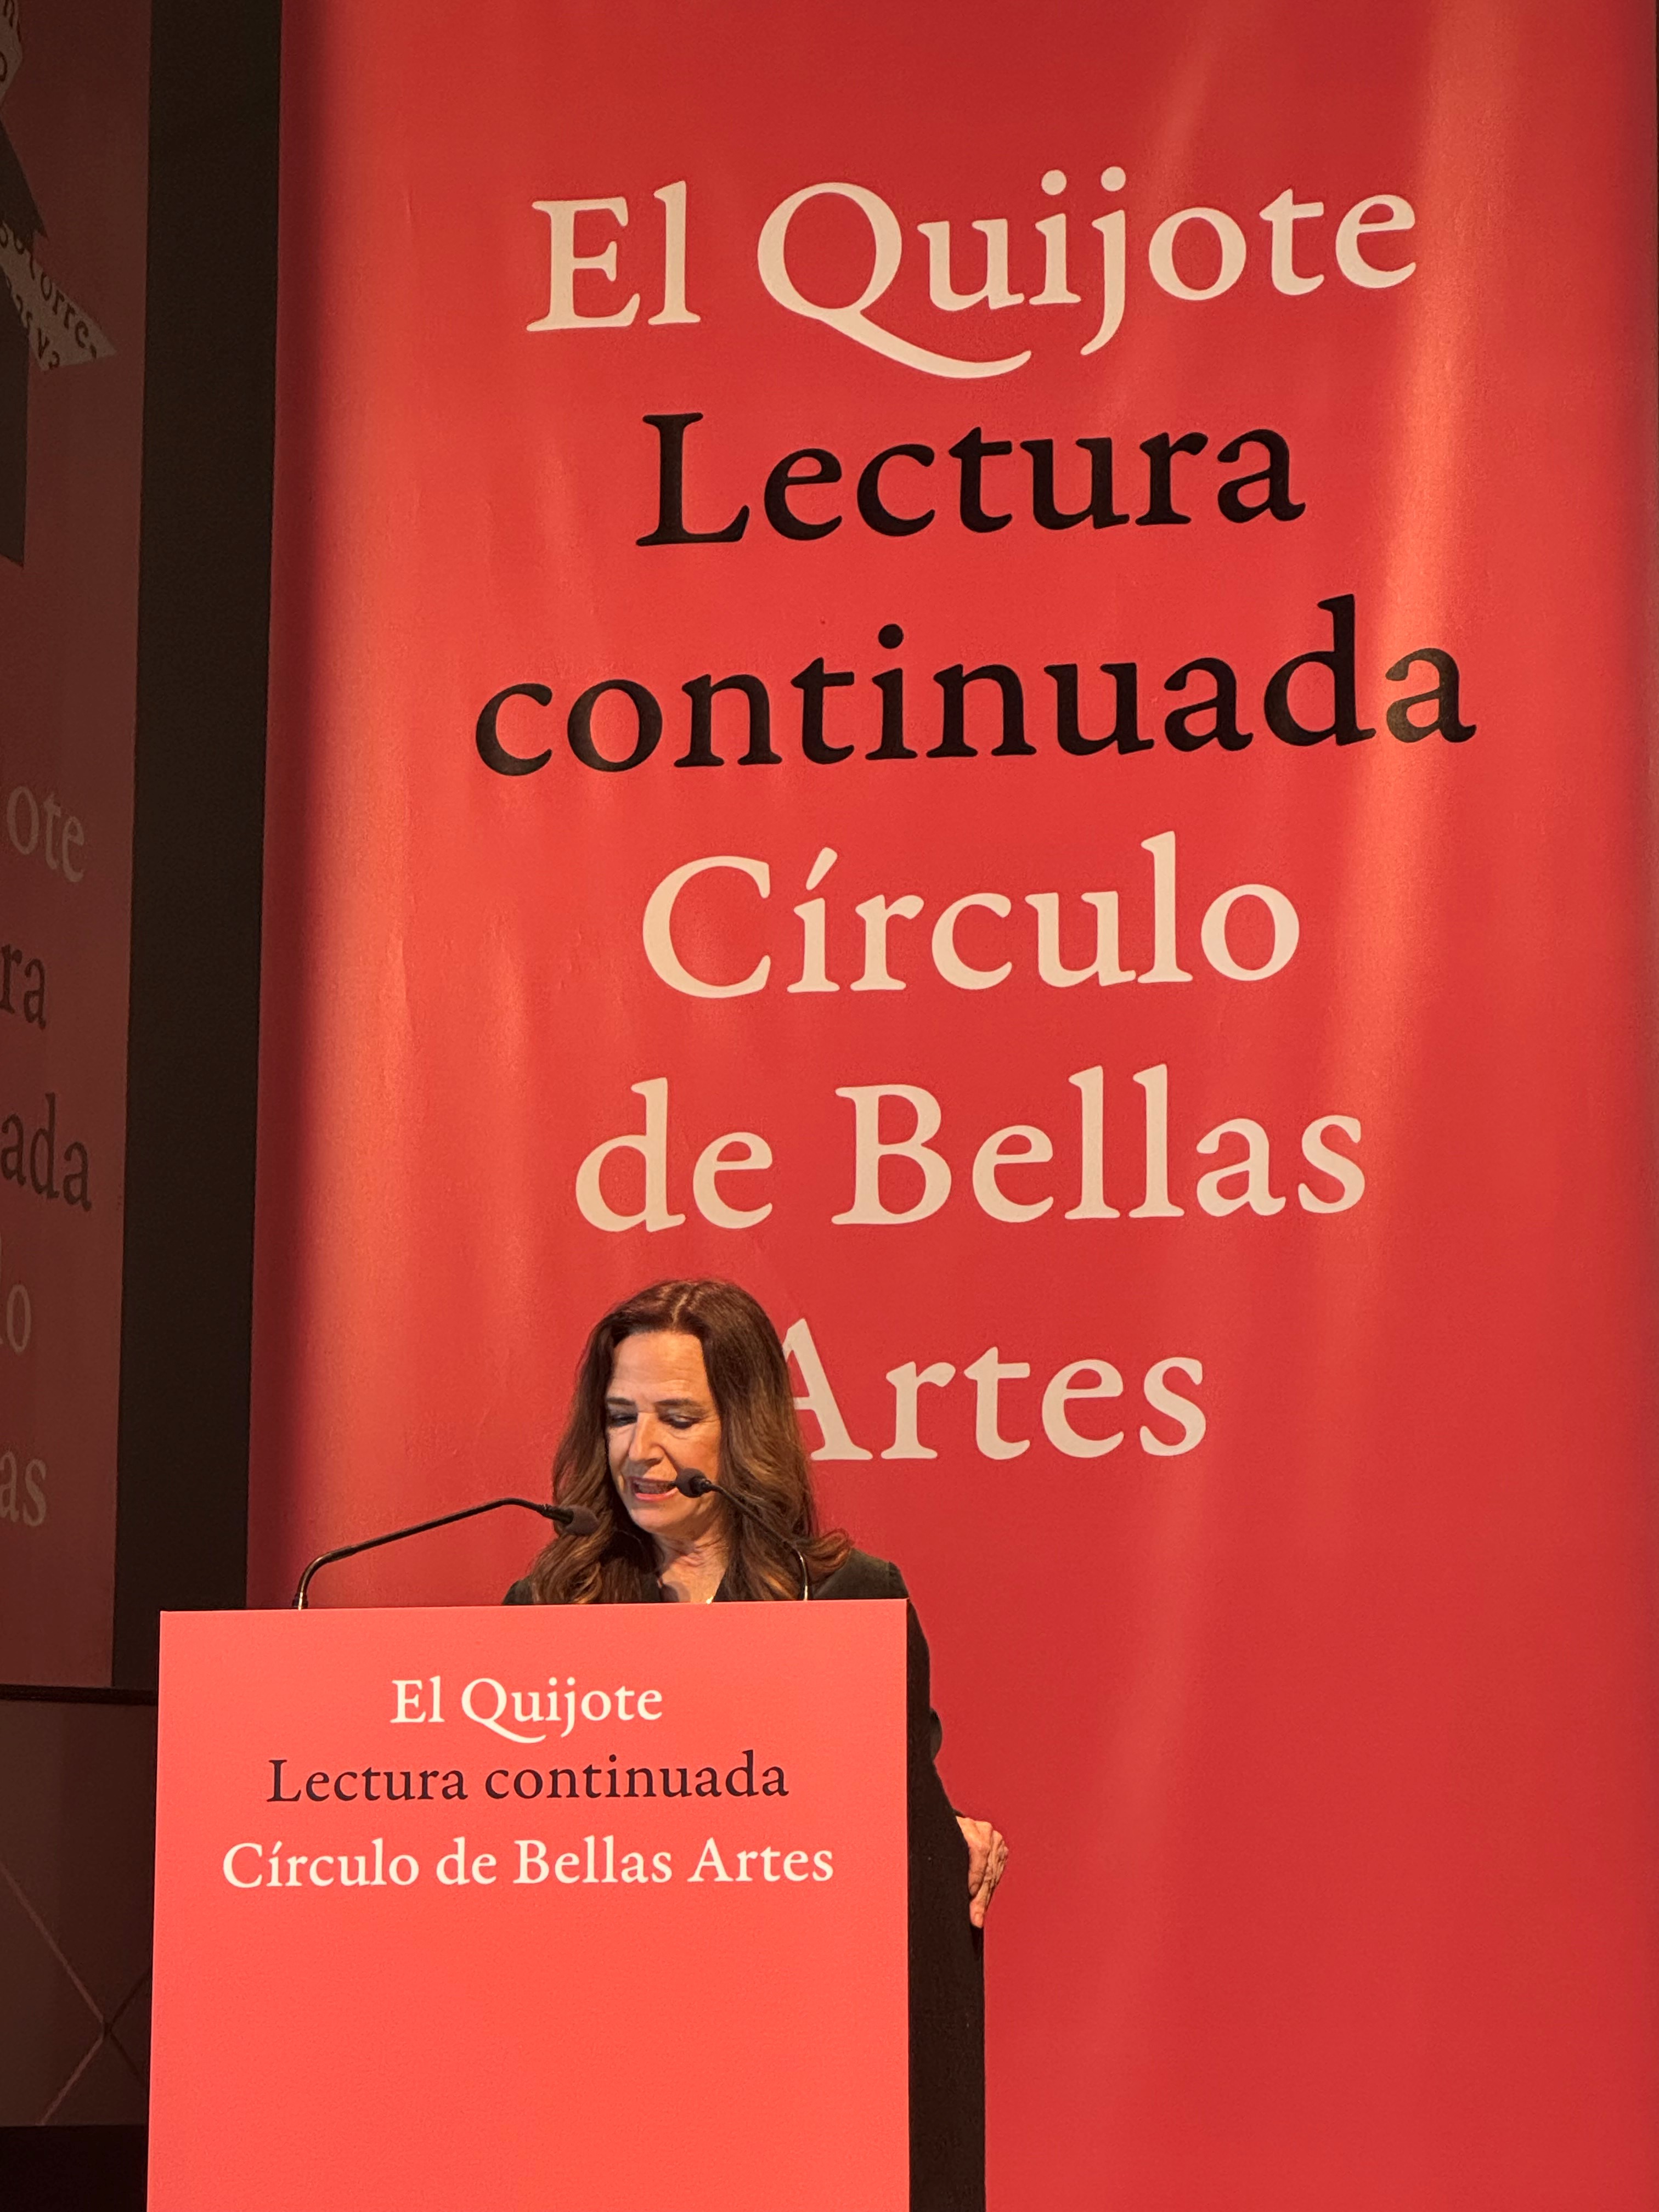 «Vigesimoctava Lectura continuada del Quijote en el Círculo de Bellas Artes»